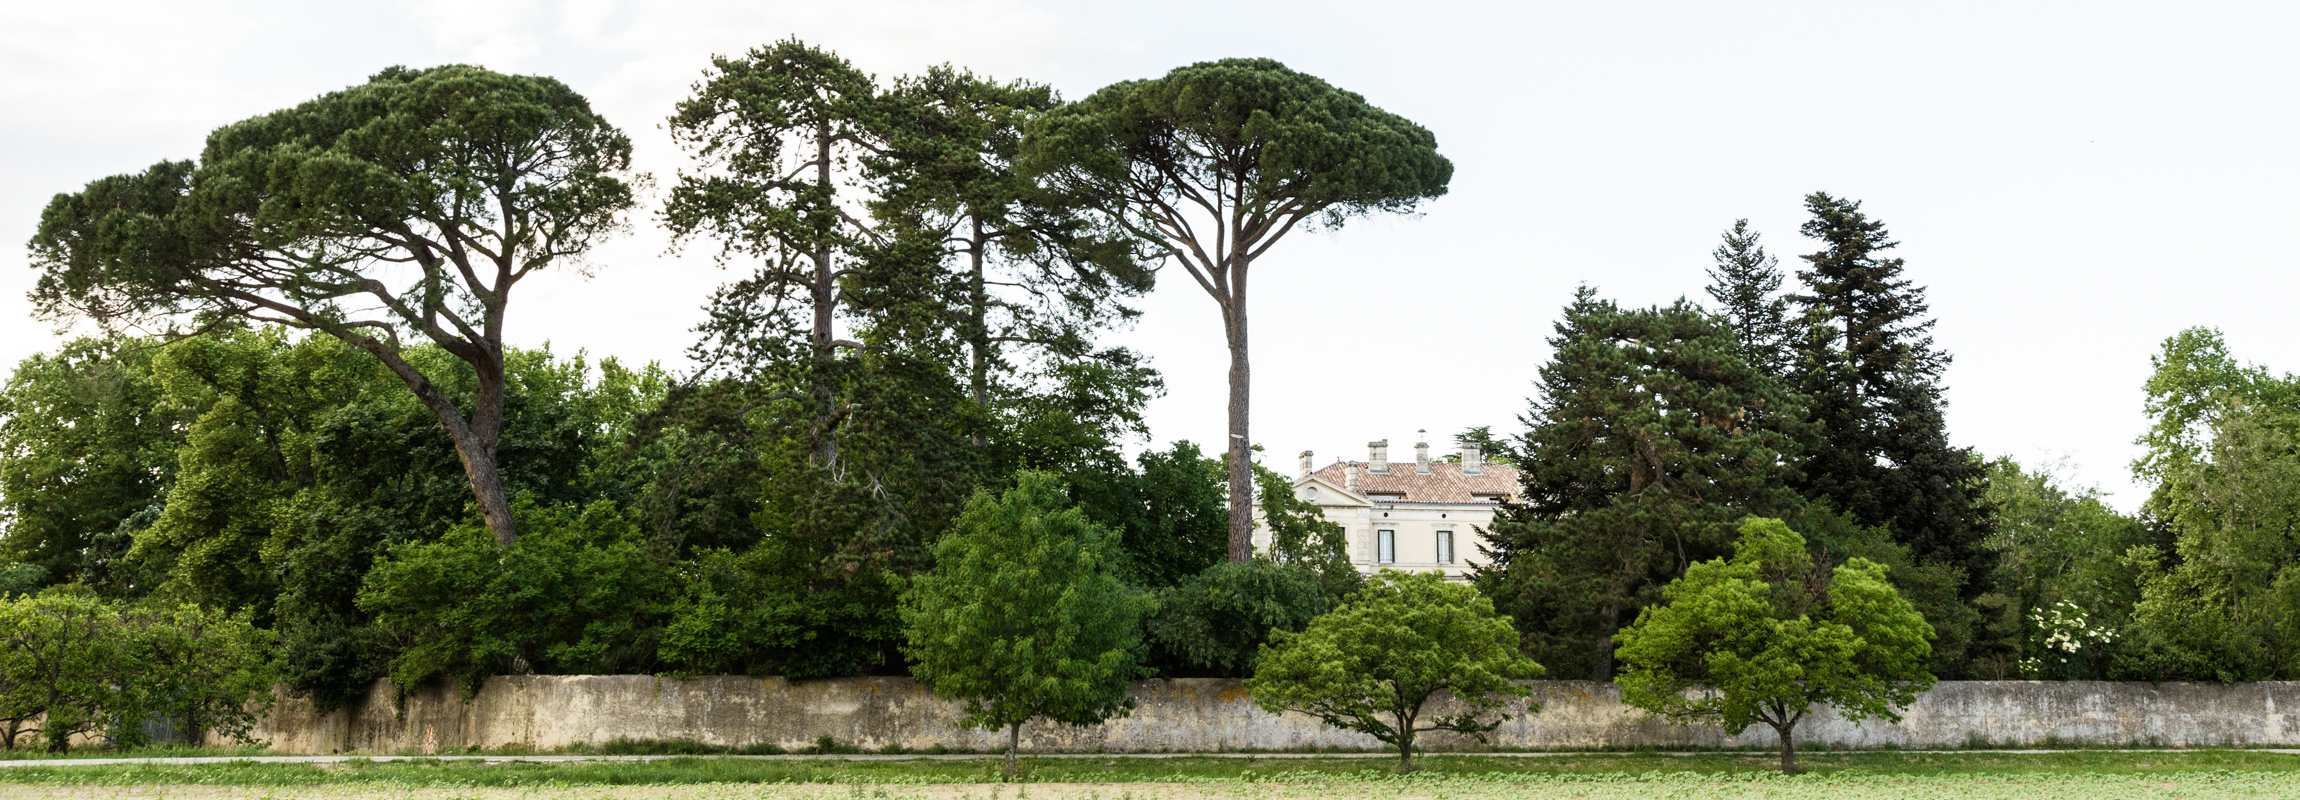 Von Bagnol-sur-Cèze her kommend zeigt das Bild zeigt den ersten Blick, welchen man vom Hotel Château de Montcaud erwischt. Das in der Provence, Südfrankreich gelegene Schlosshotel steht mitten in einem prächtigen Park mit jahrhundertealten Baumbestand und ist von einer historischen Mauer umgeben.